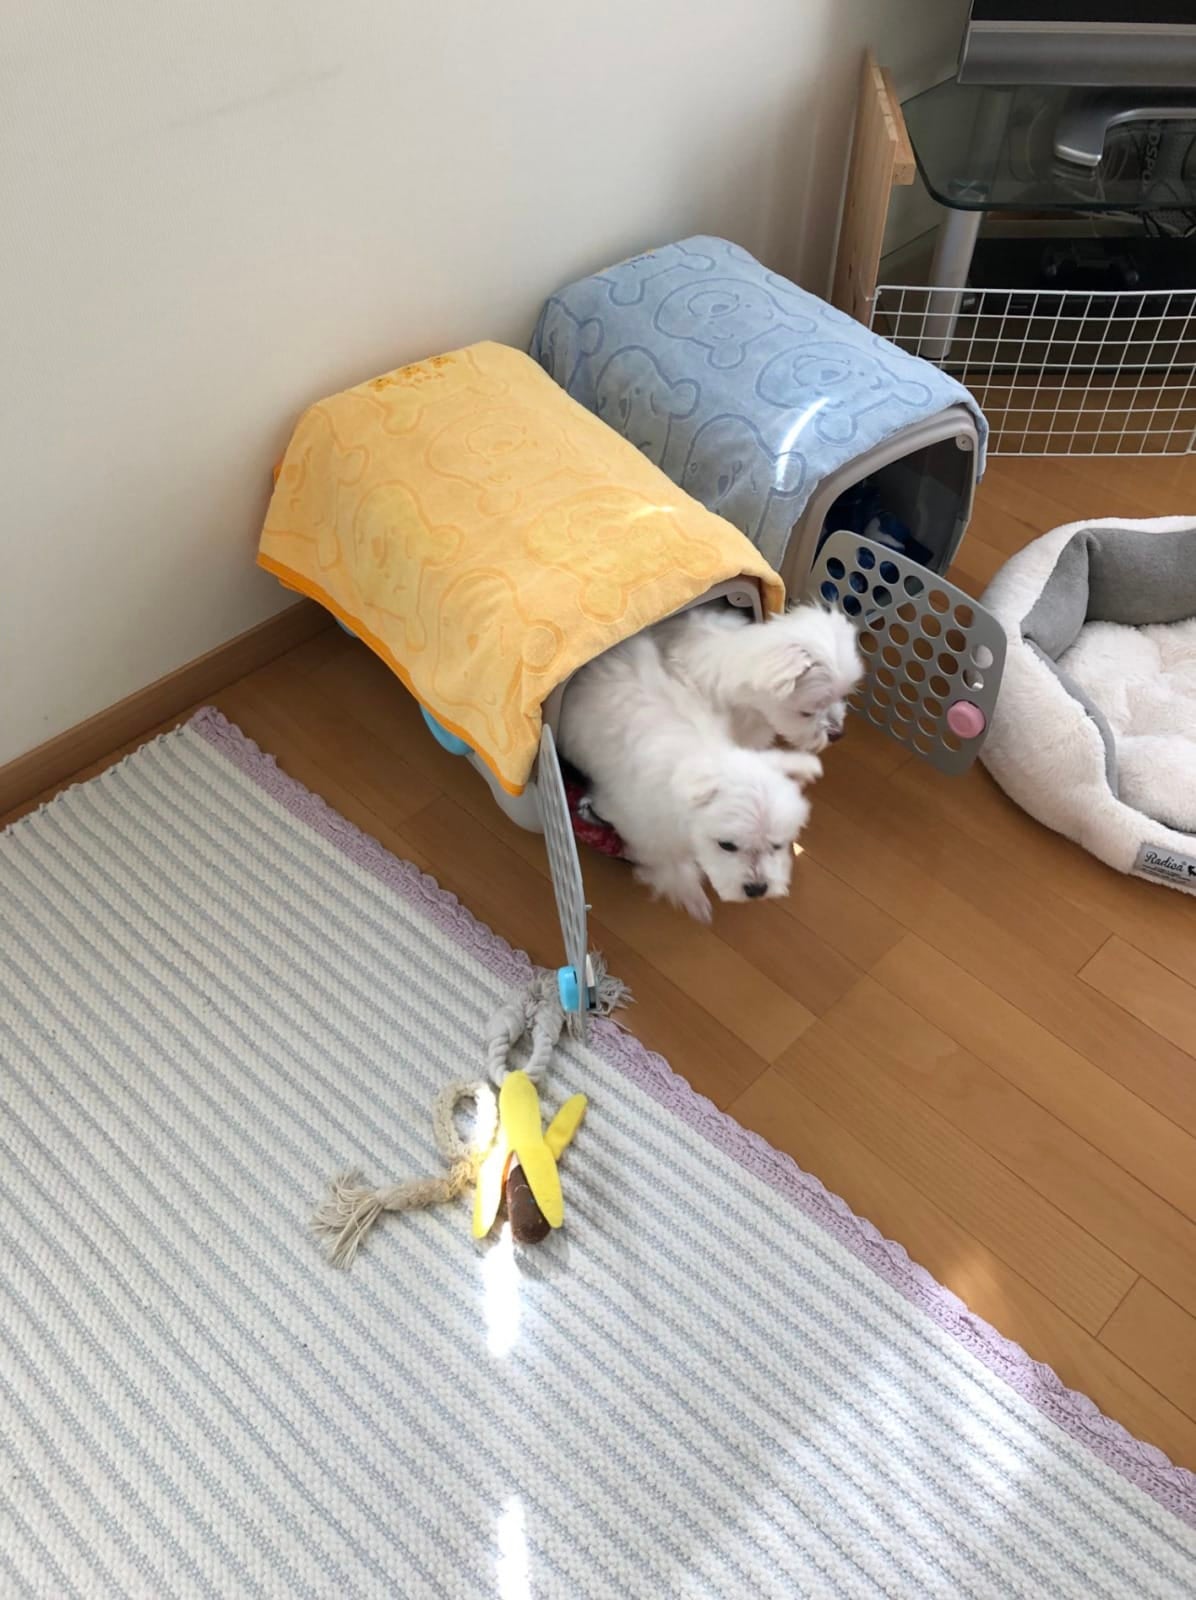 น้องหมาชอบนอนอยู่กรงเดียวกัน